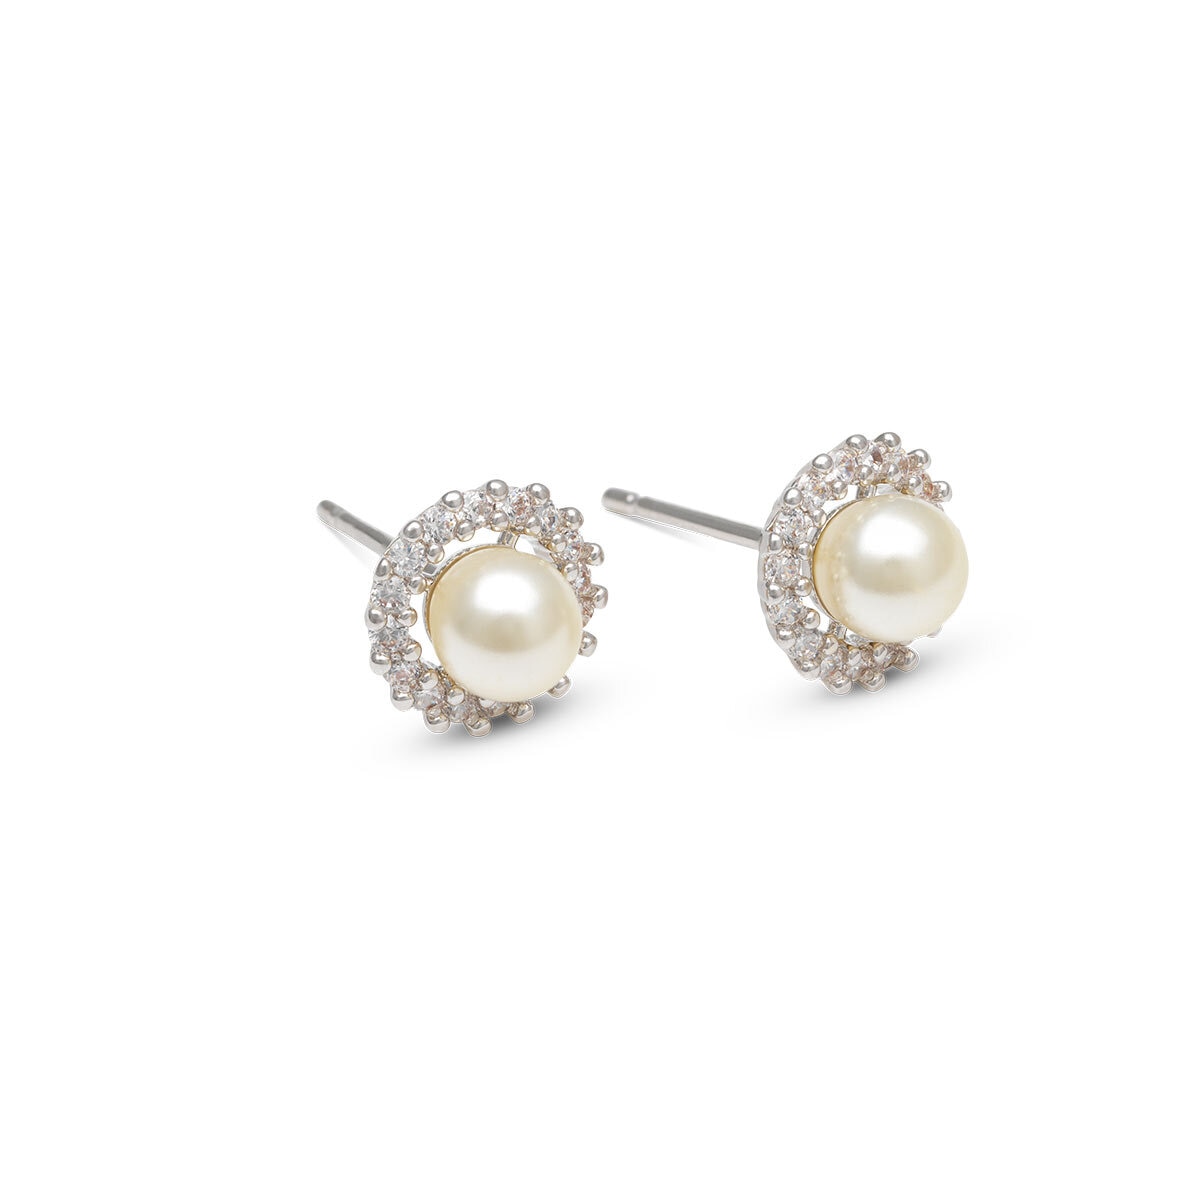 Colette pearl stud earrings - Ivory pearl